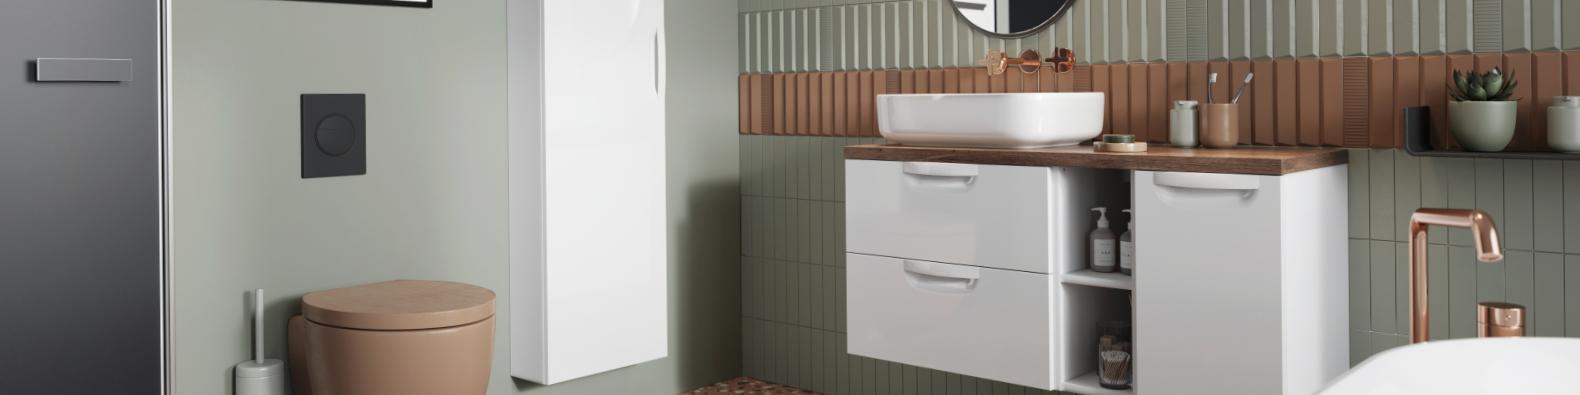 Jak wybrać szafkę pod umywalkę do łazienki?